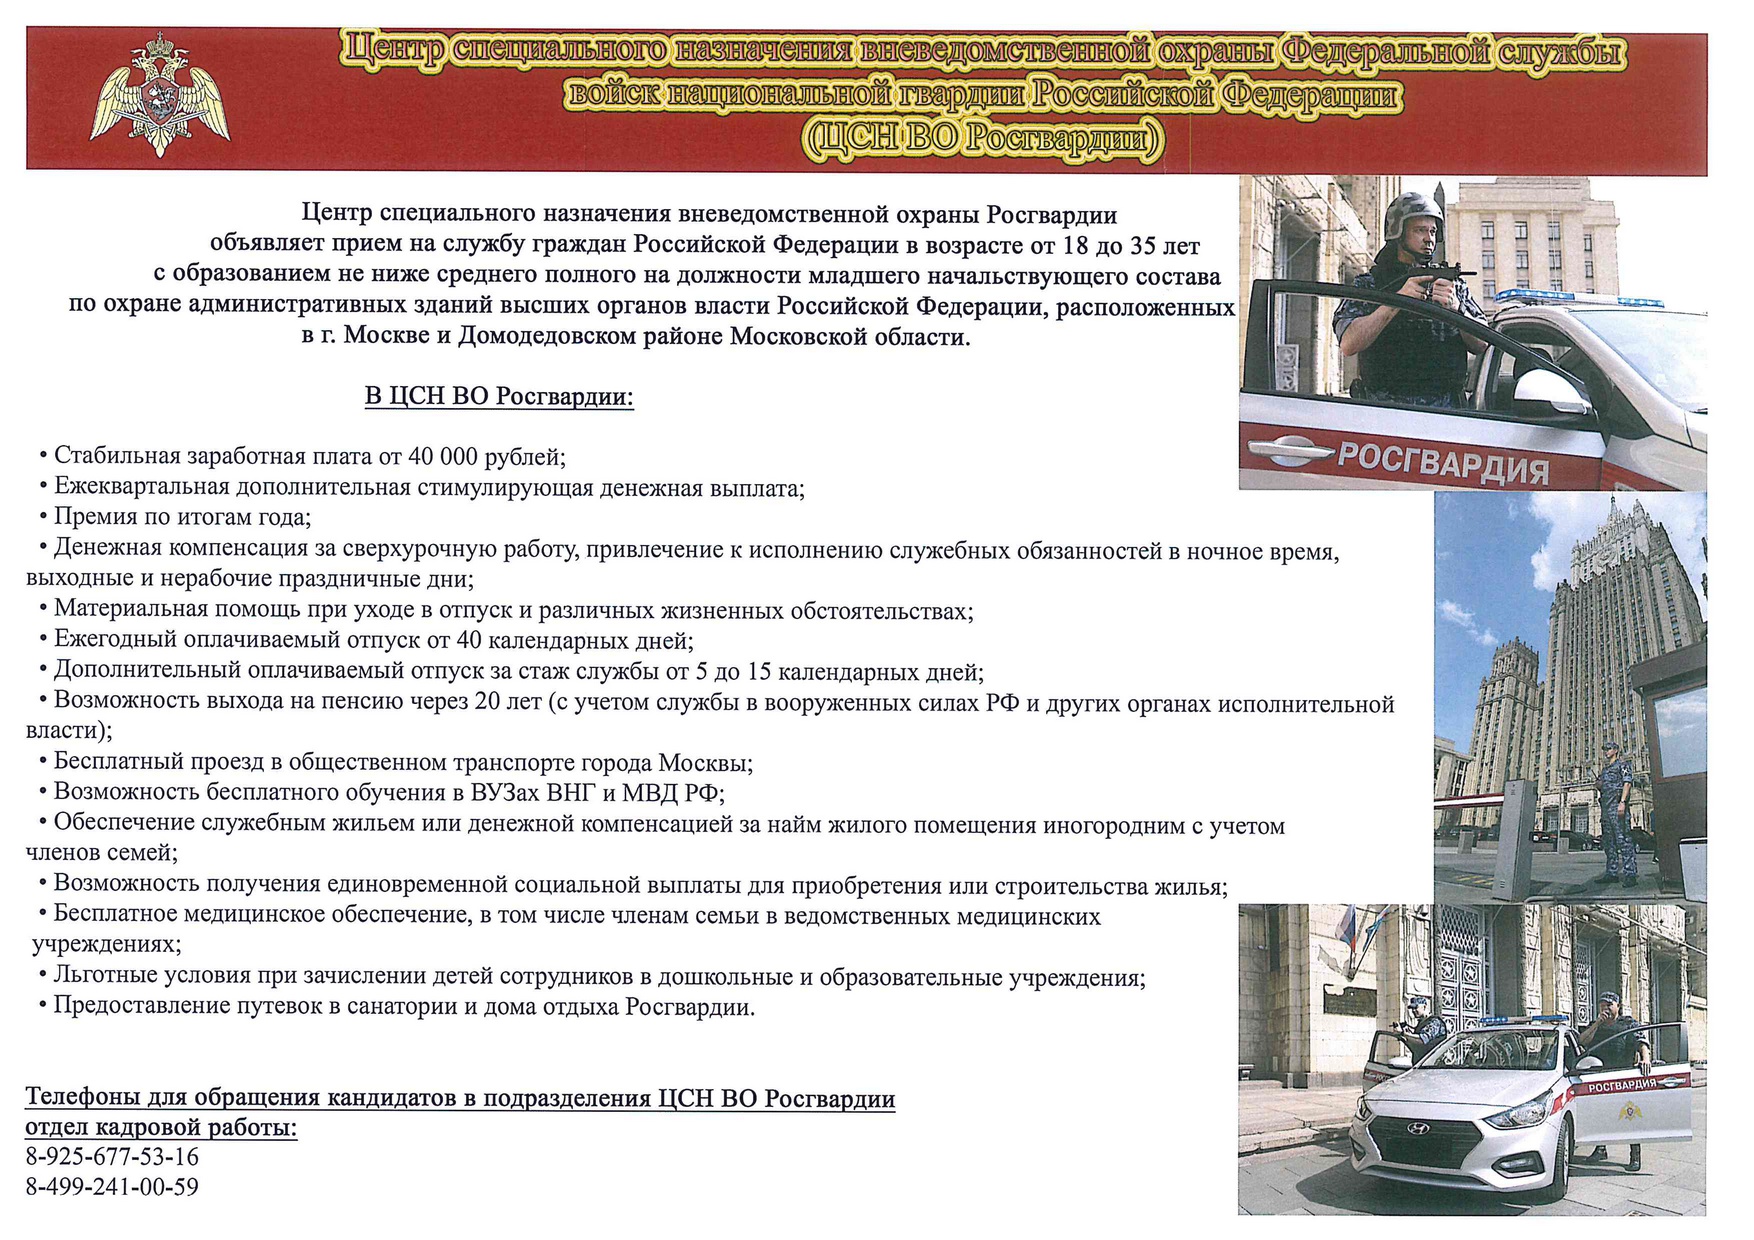 Центр специального назначения вневедомственной охраны Росгвардии объявляет прием на службу граждан Российской Федерации 